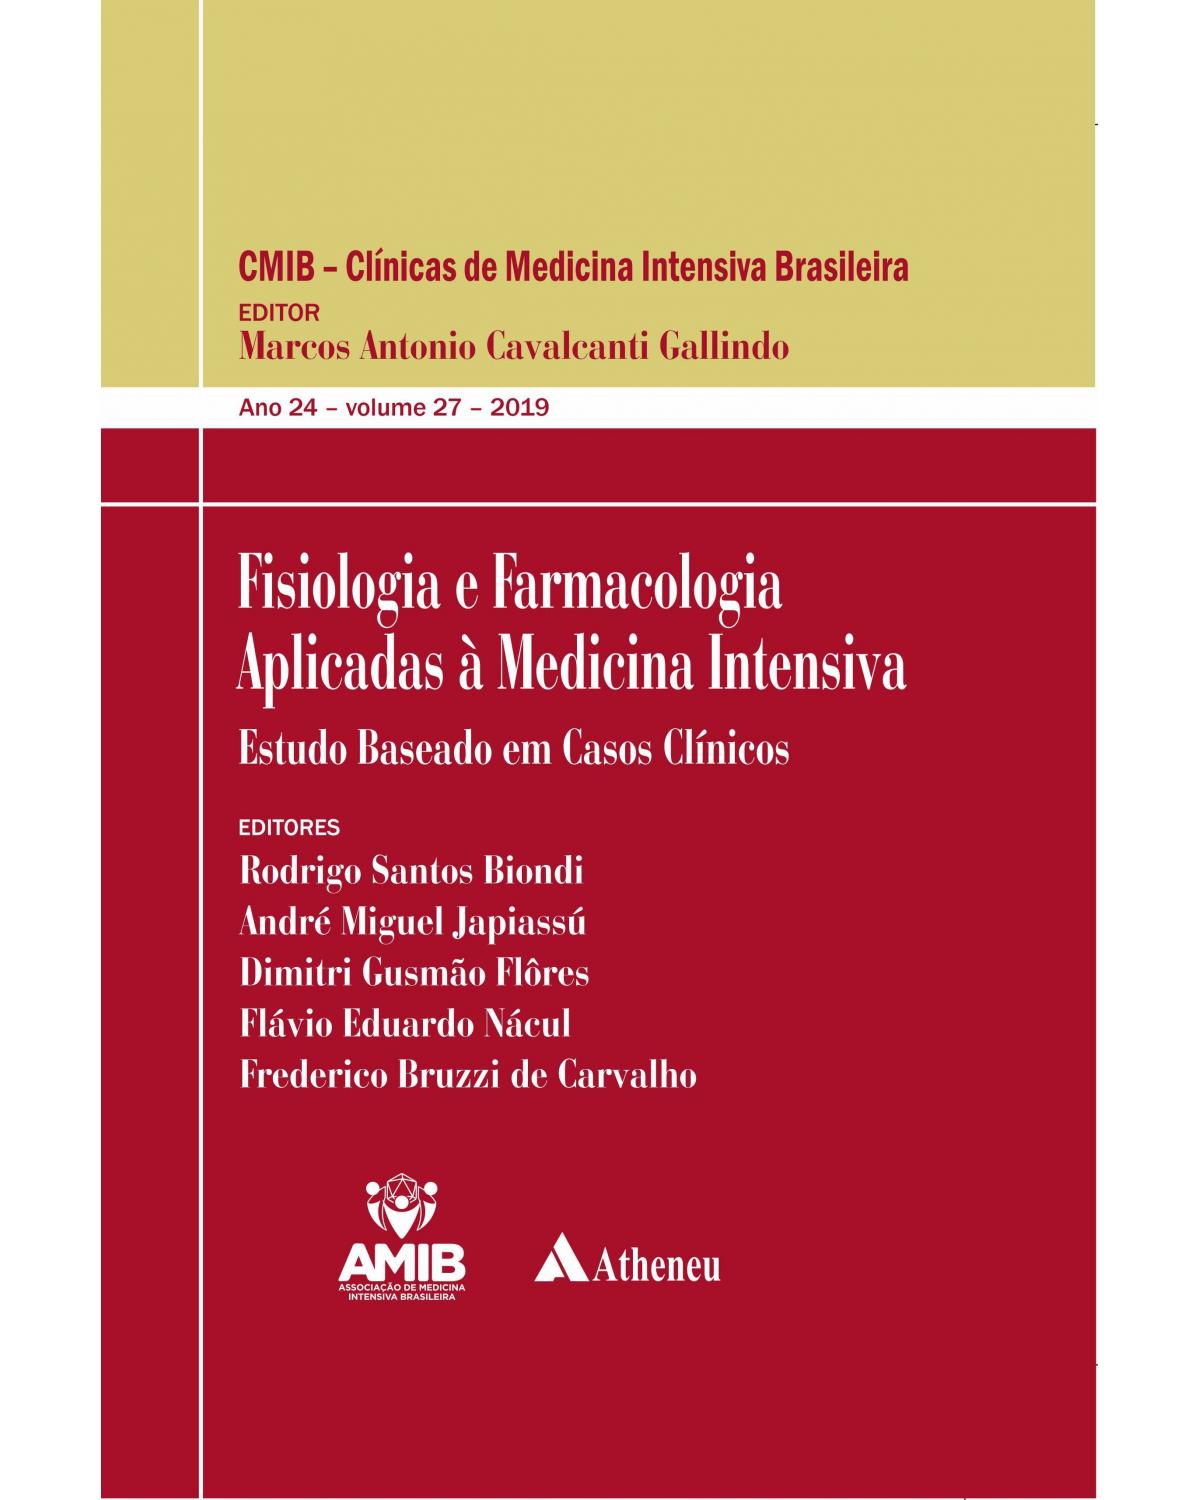 Fisiologia e farmacologia aplicadas à medicina intensiva - estudo baseado em casos clínicos - 1ª Edição | 2019